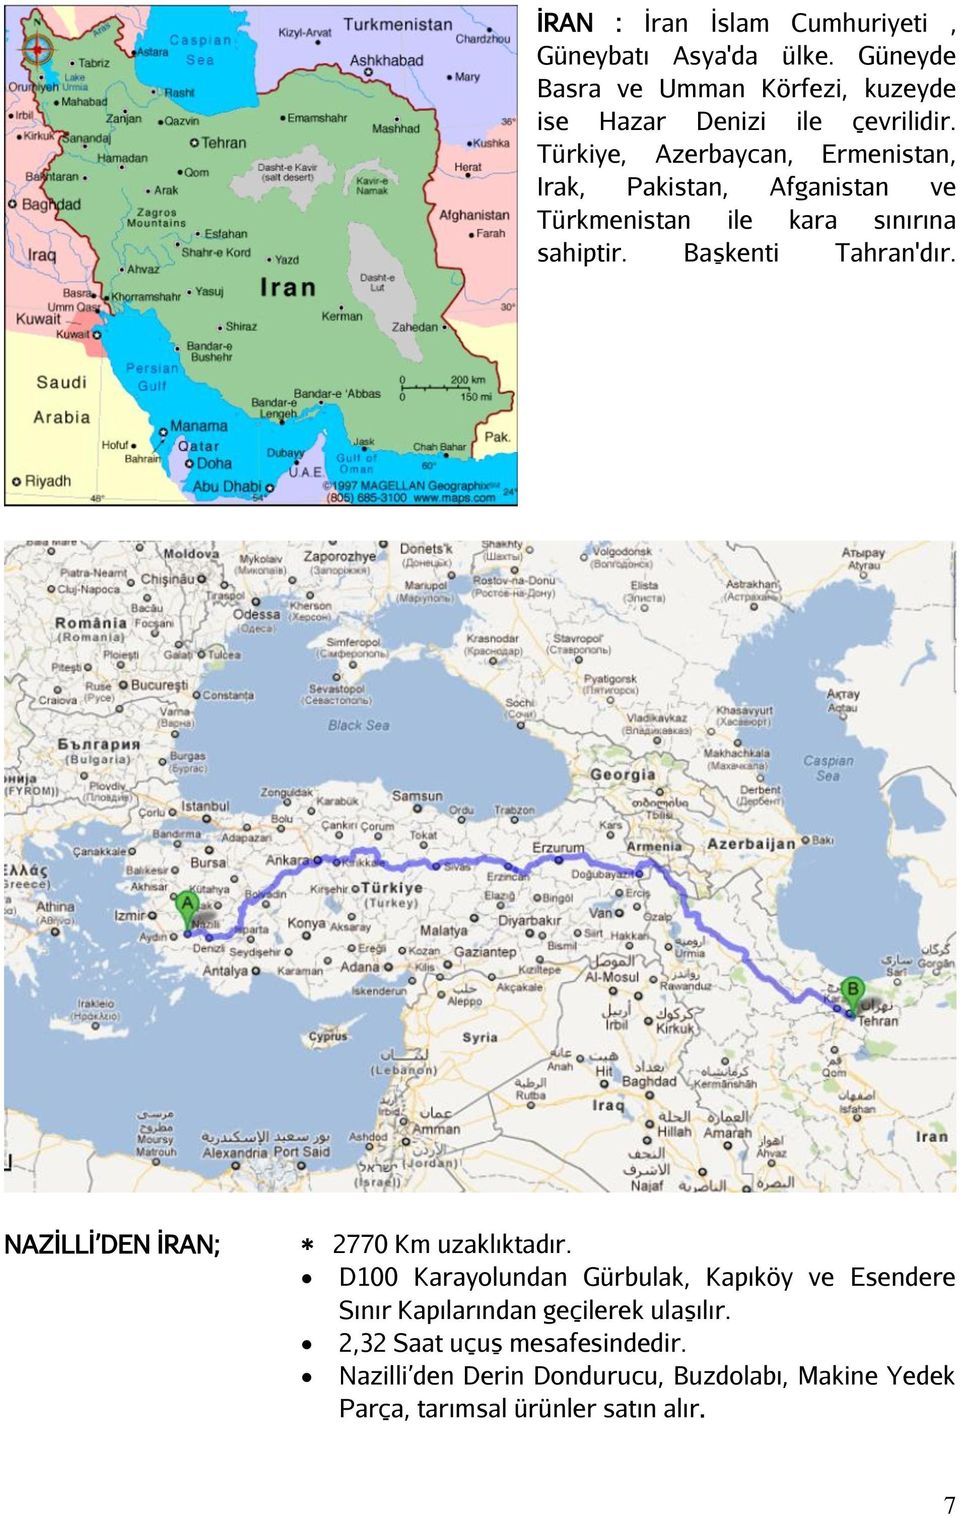 Türkiye, Azerbaycan, Ermenistan, Irak, Pakistan, Afganistan ve Türkmenistan ile kara sınırına sahiptir. Başkenti Tahran'dır.